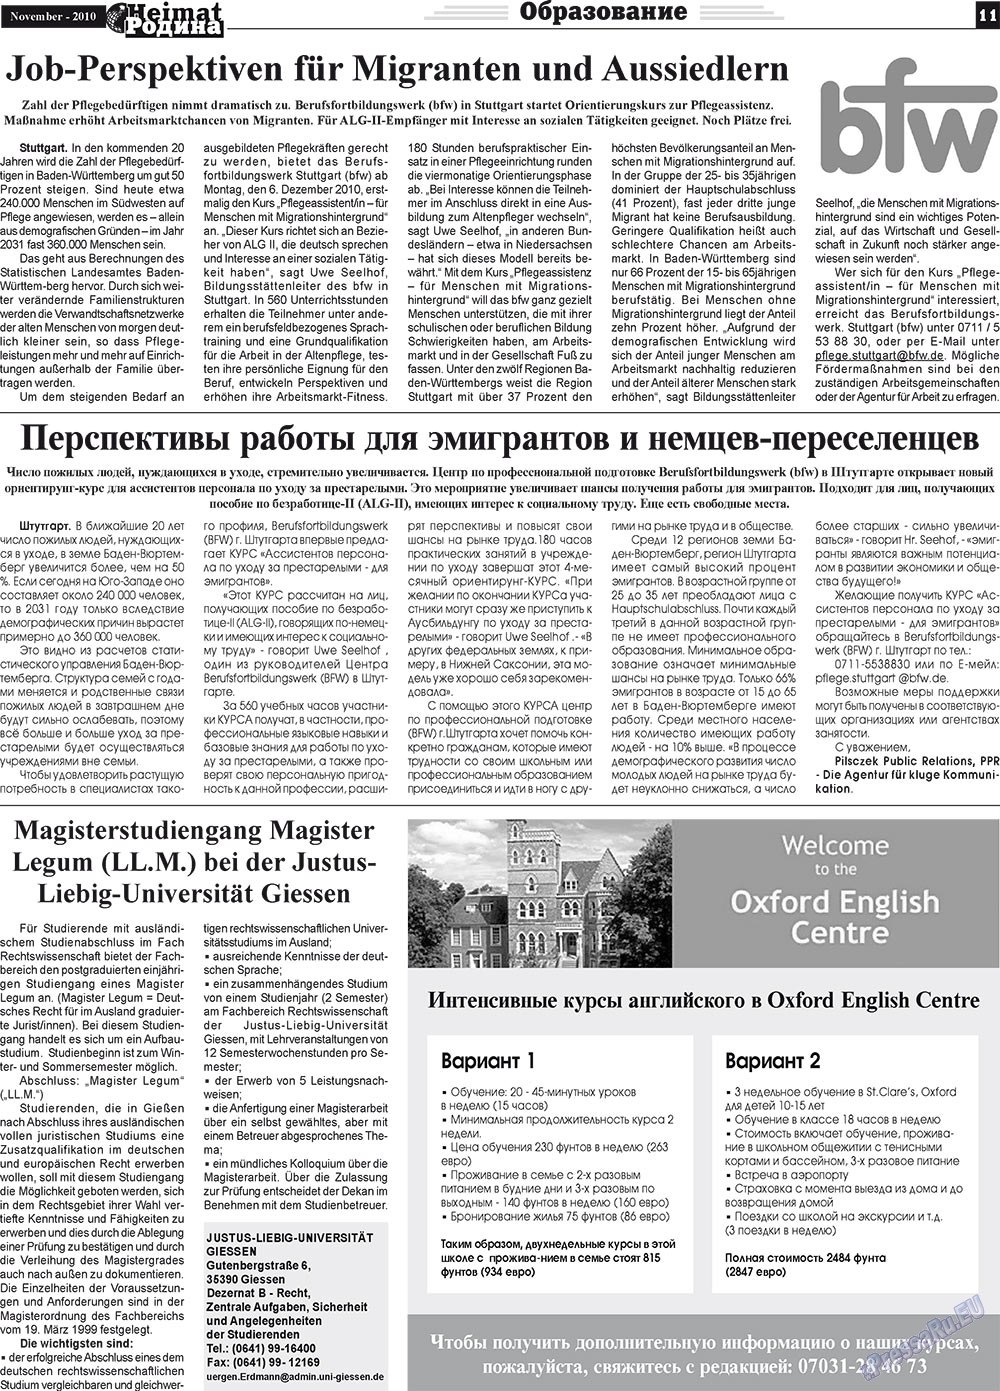 Heimat-Родина (газета). 2010 год, номер 11, стр. 11